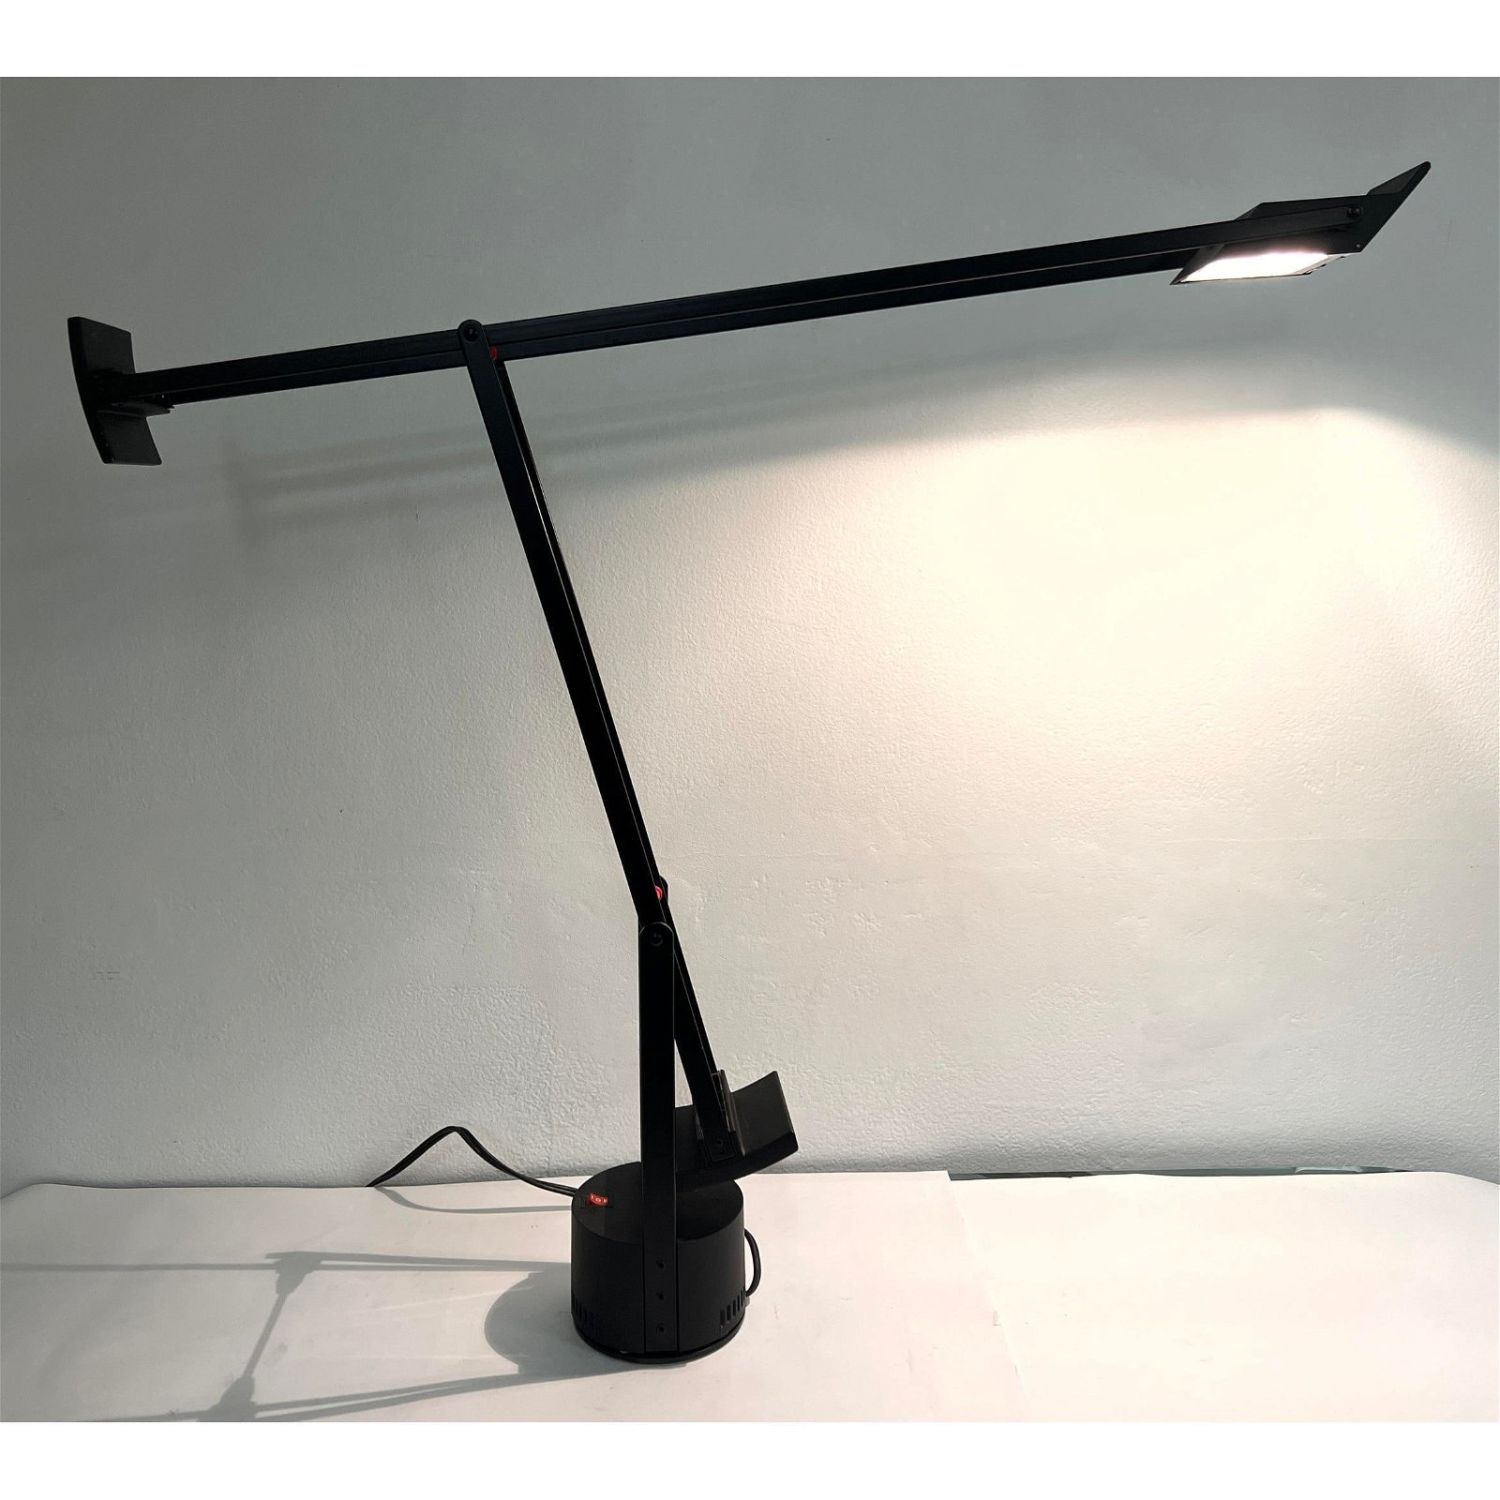 Tizio Classic Black Desk Lamp by 362d47